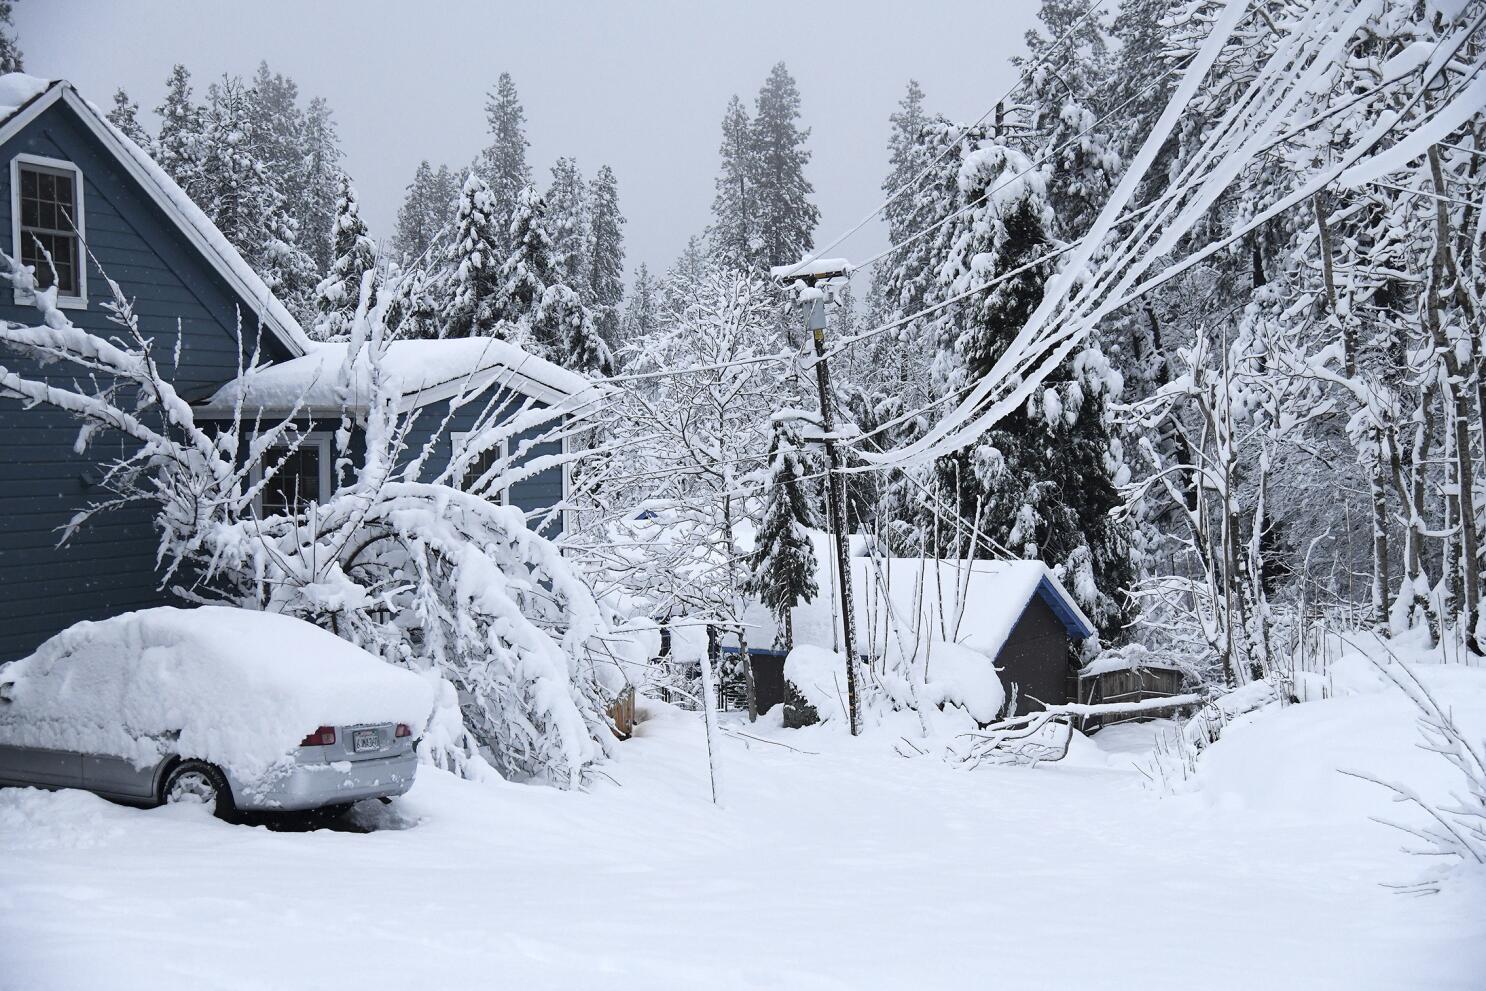 Record-breaking Sierra snow buries towns, closes highways - Los